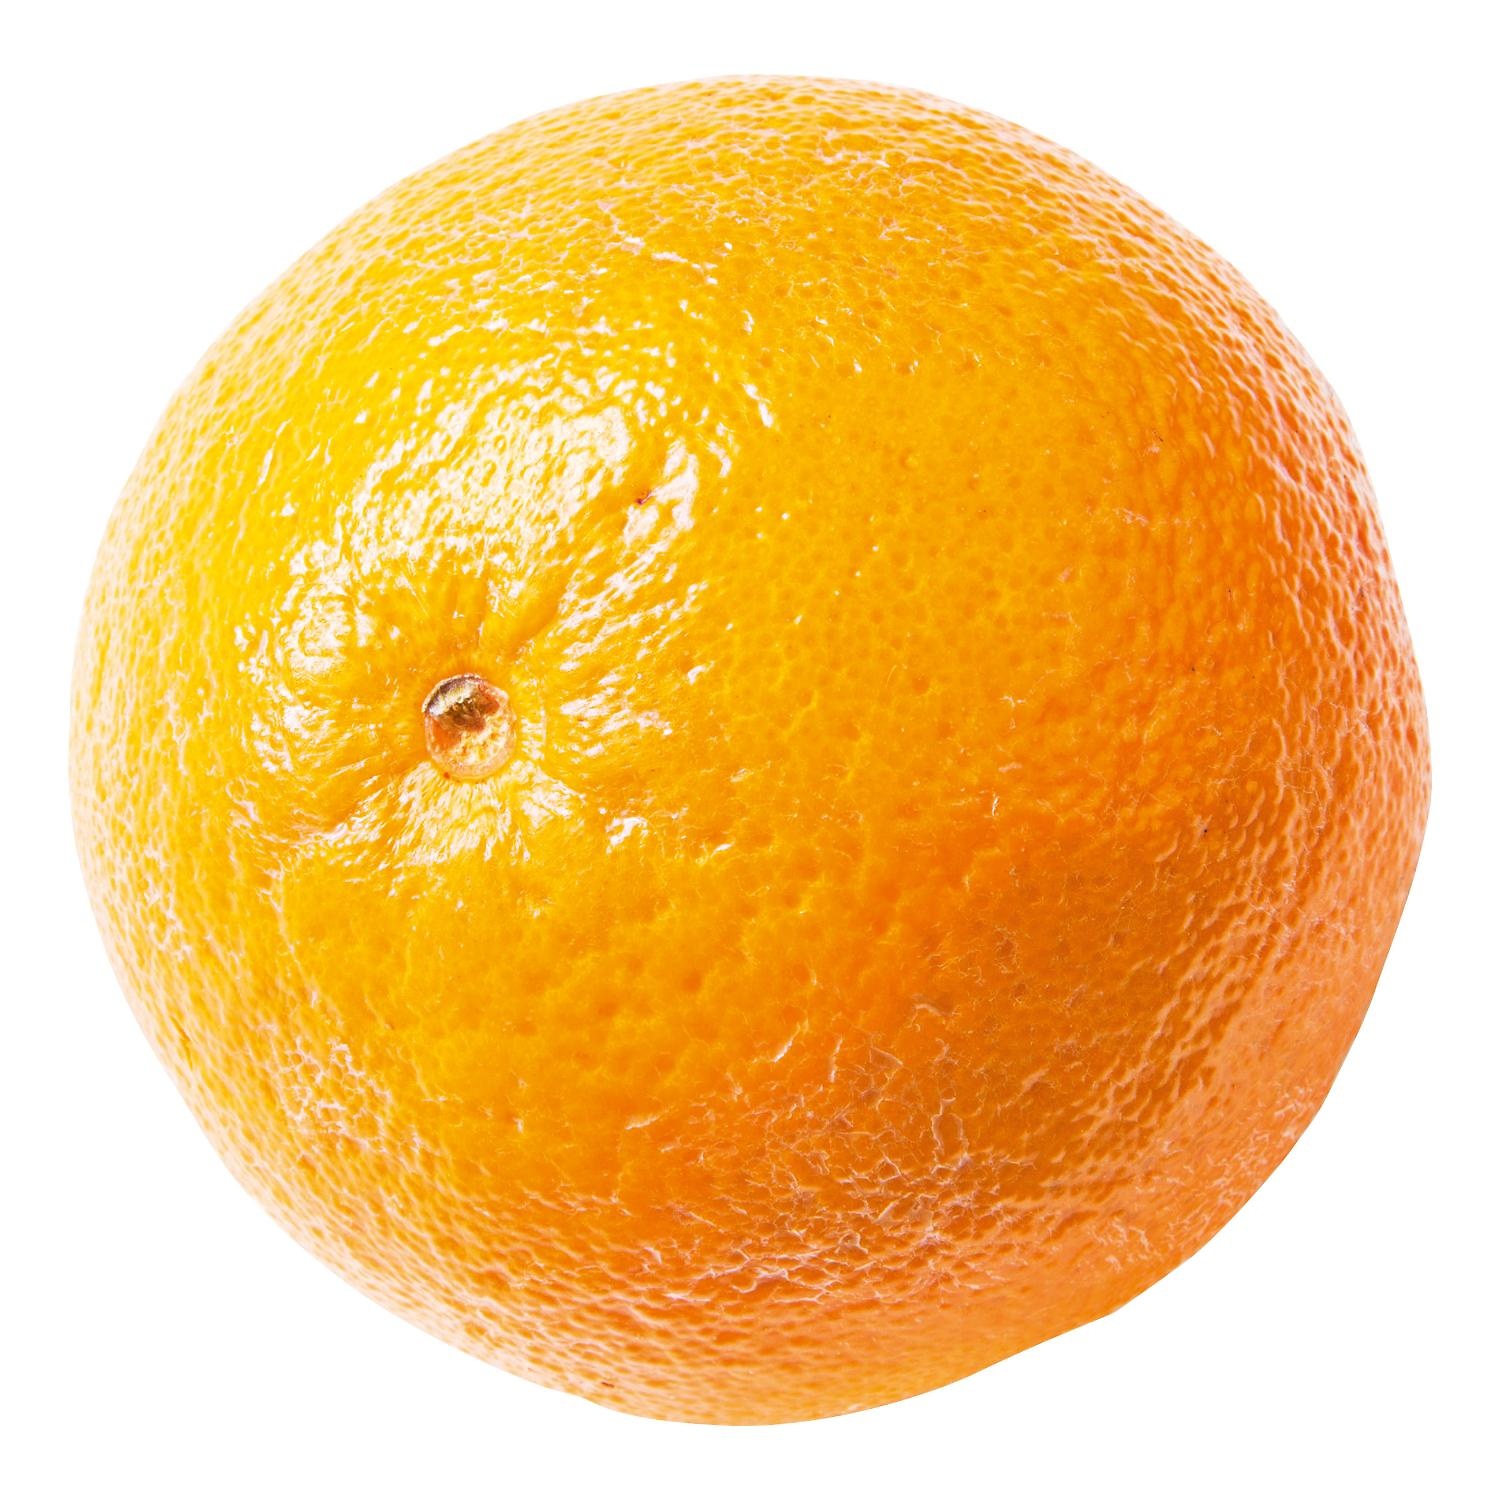 Sinaasappels navels middel  per stuk (lekker zoet)